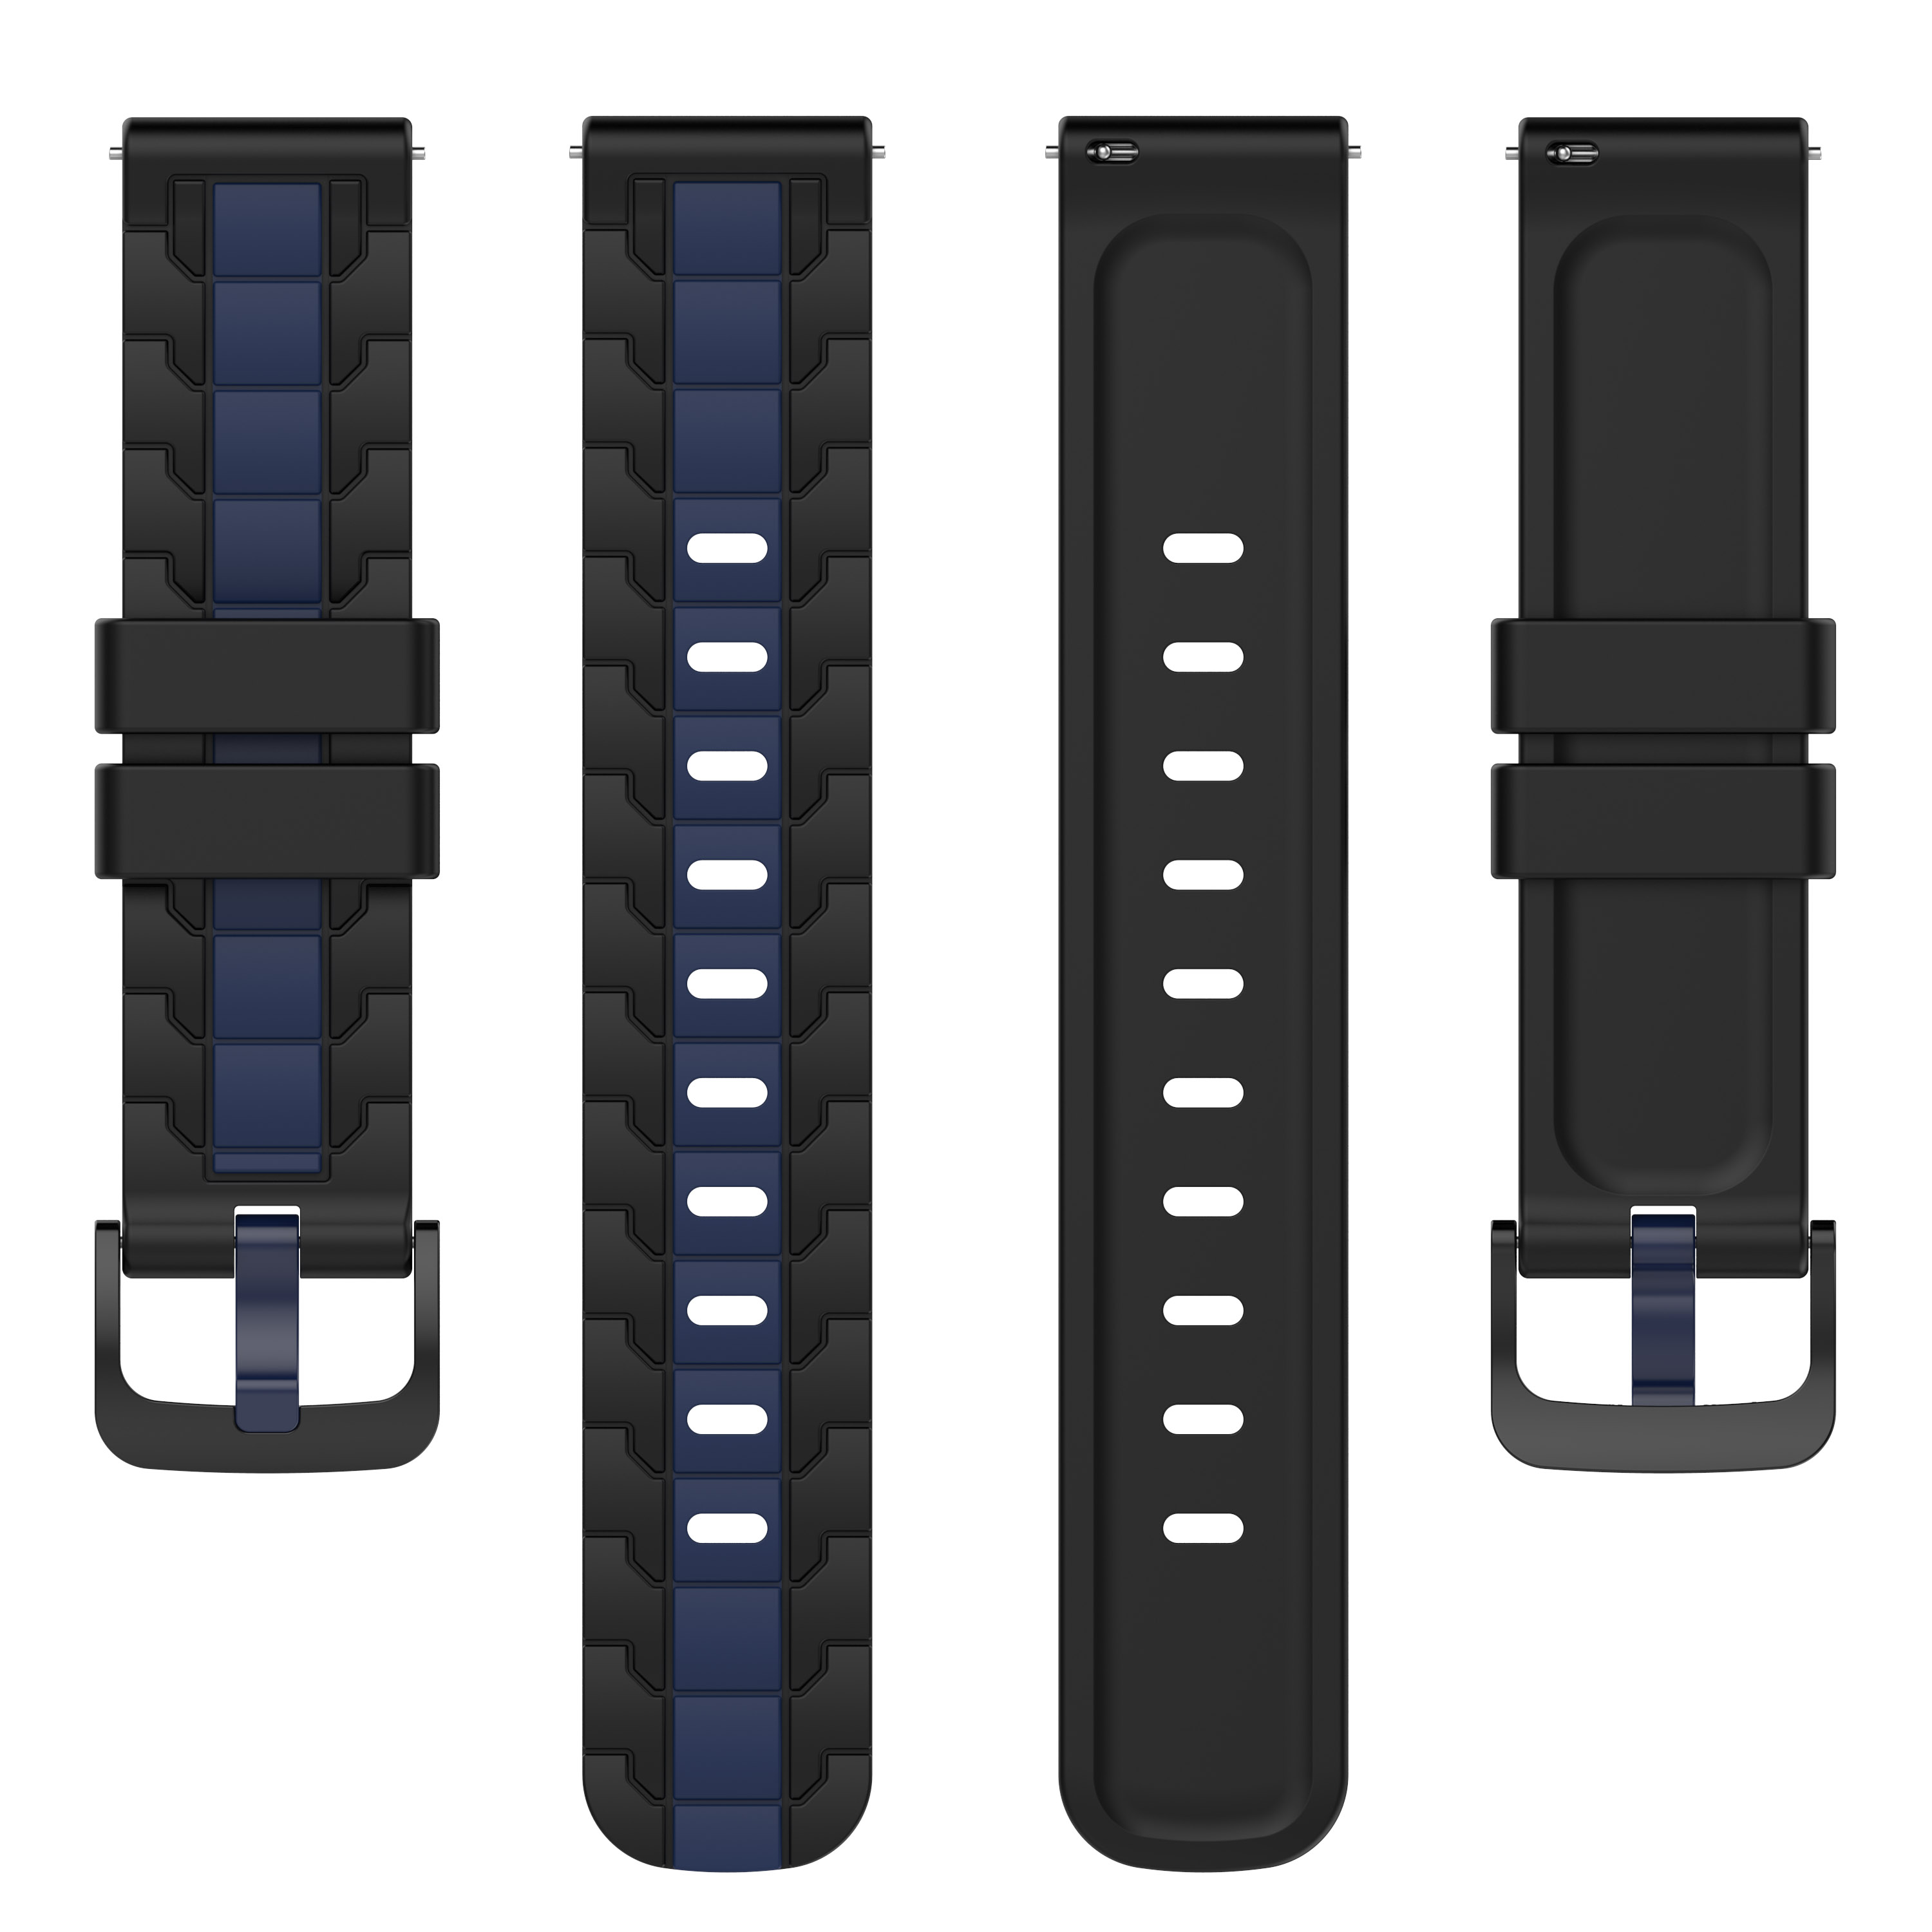 INF Uhrenarmband Silikon schwarz/blau 22 universal, universal, Schwarz/Blau Ersatzarmband, mm